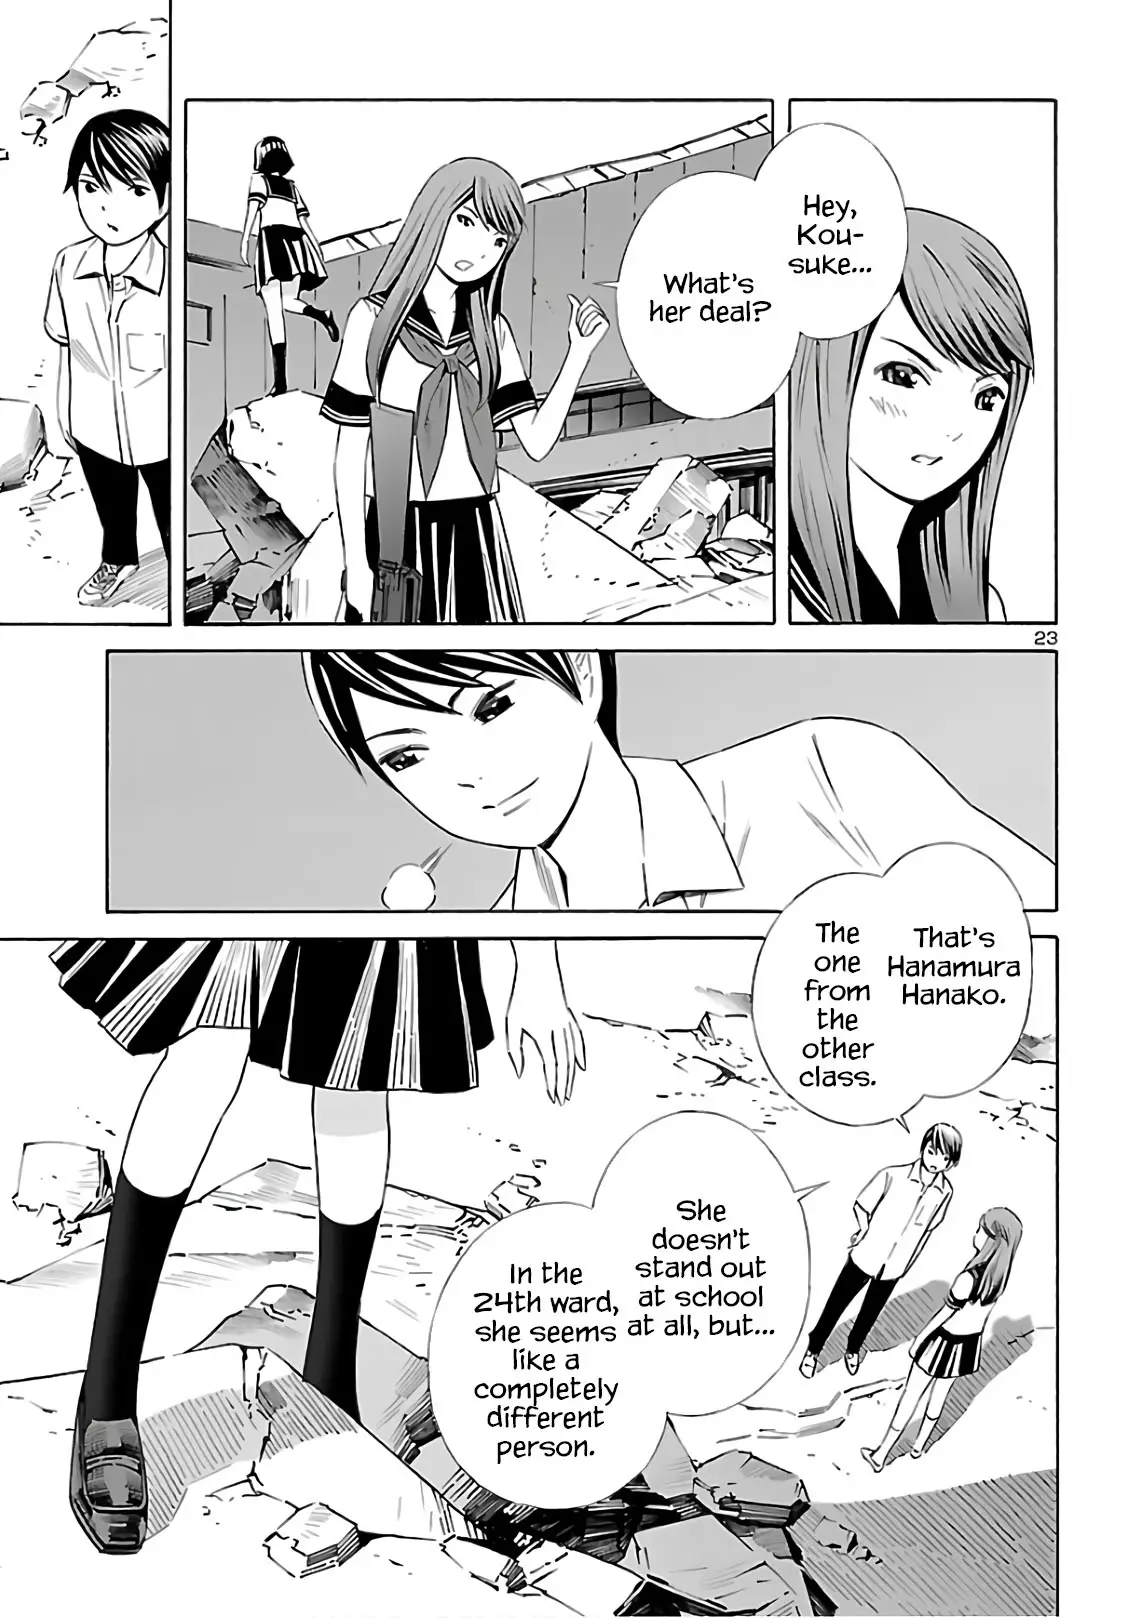 24-Ku No Hanako-San - 9 page 23